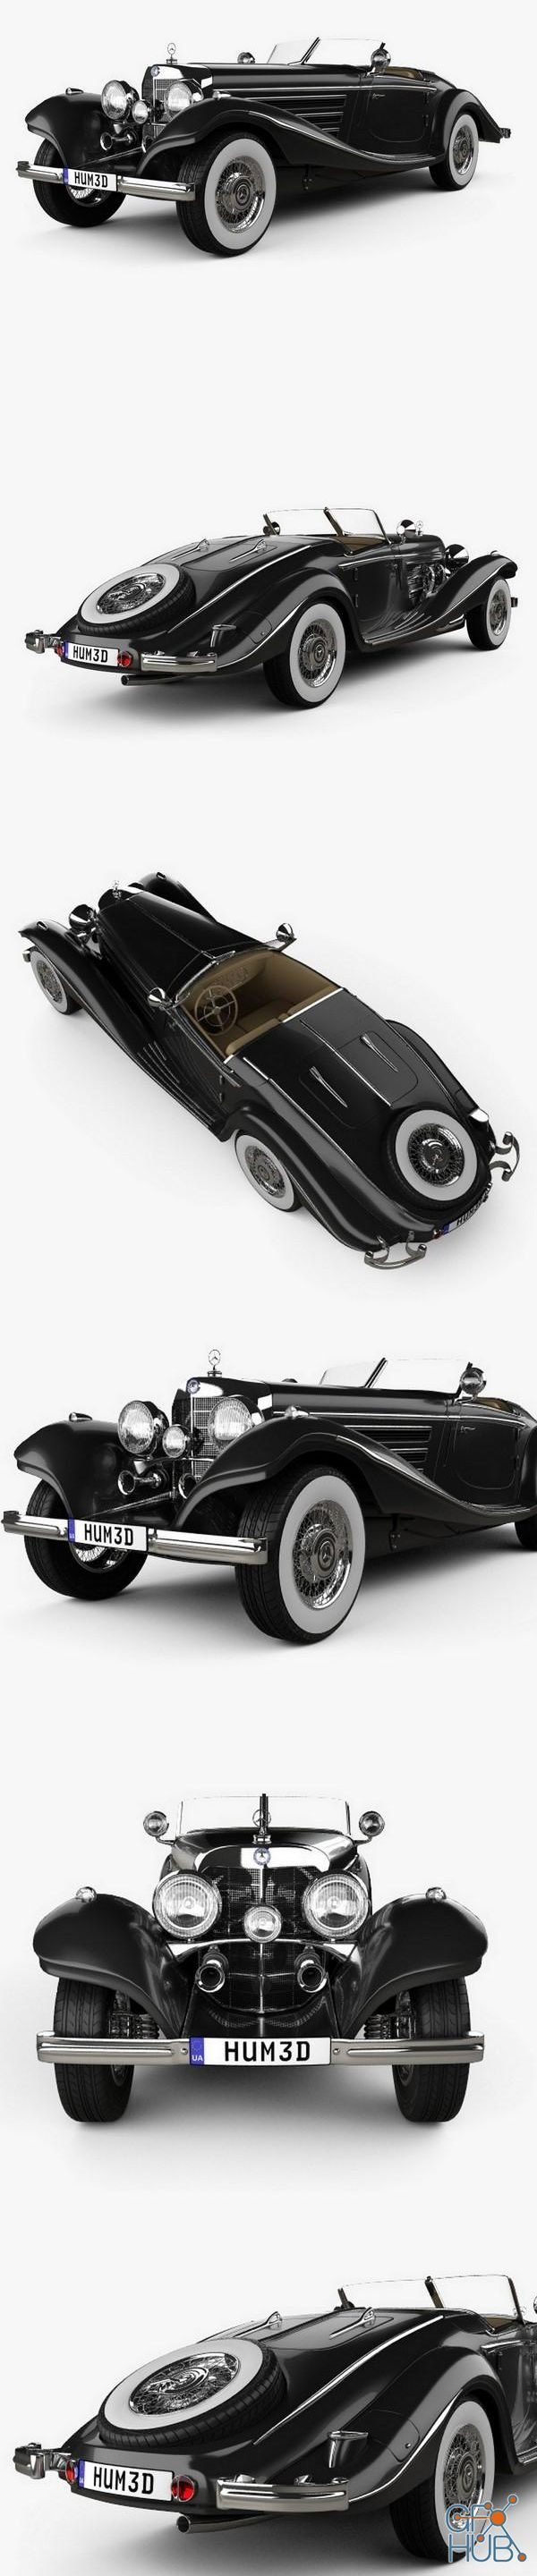 Mercedes-Benz 540K 1936 car